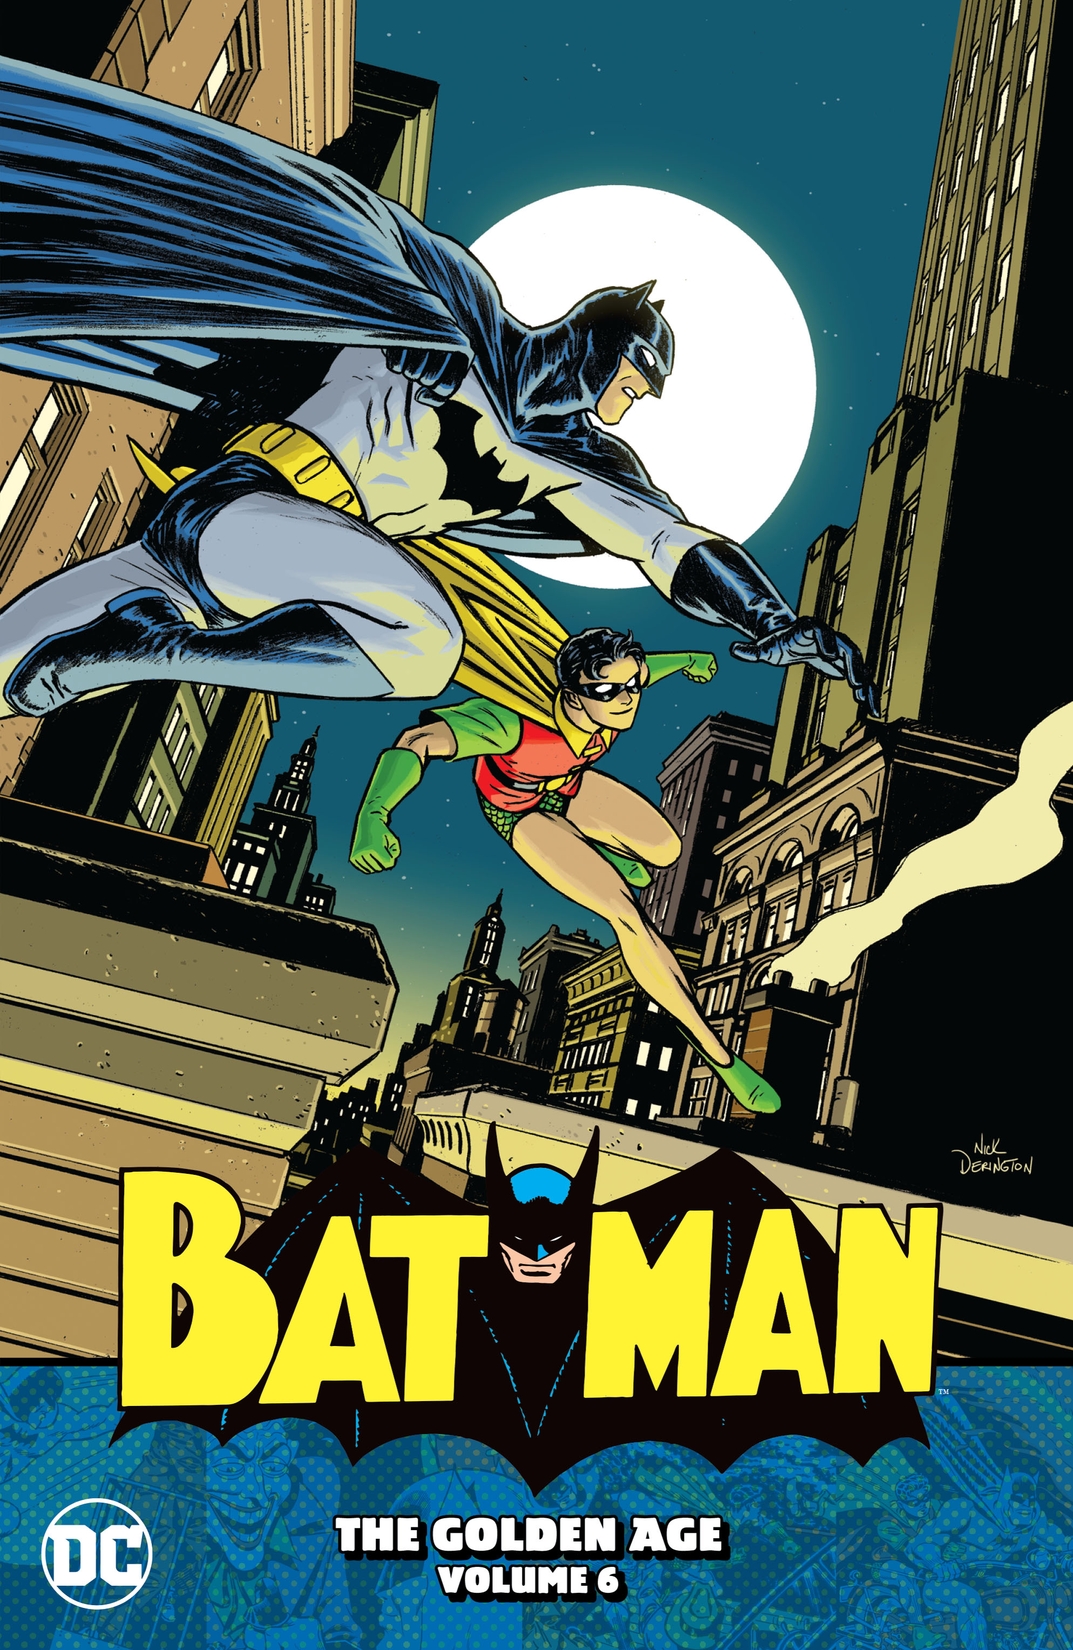 Batman: The Golden Age Vol. 6 preview images